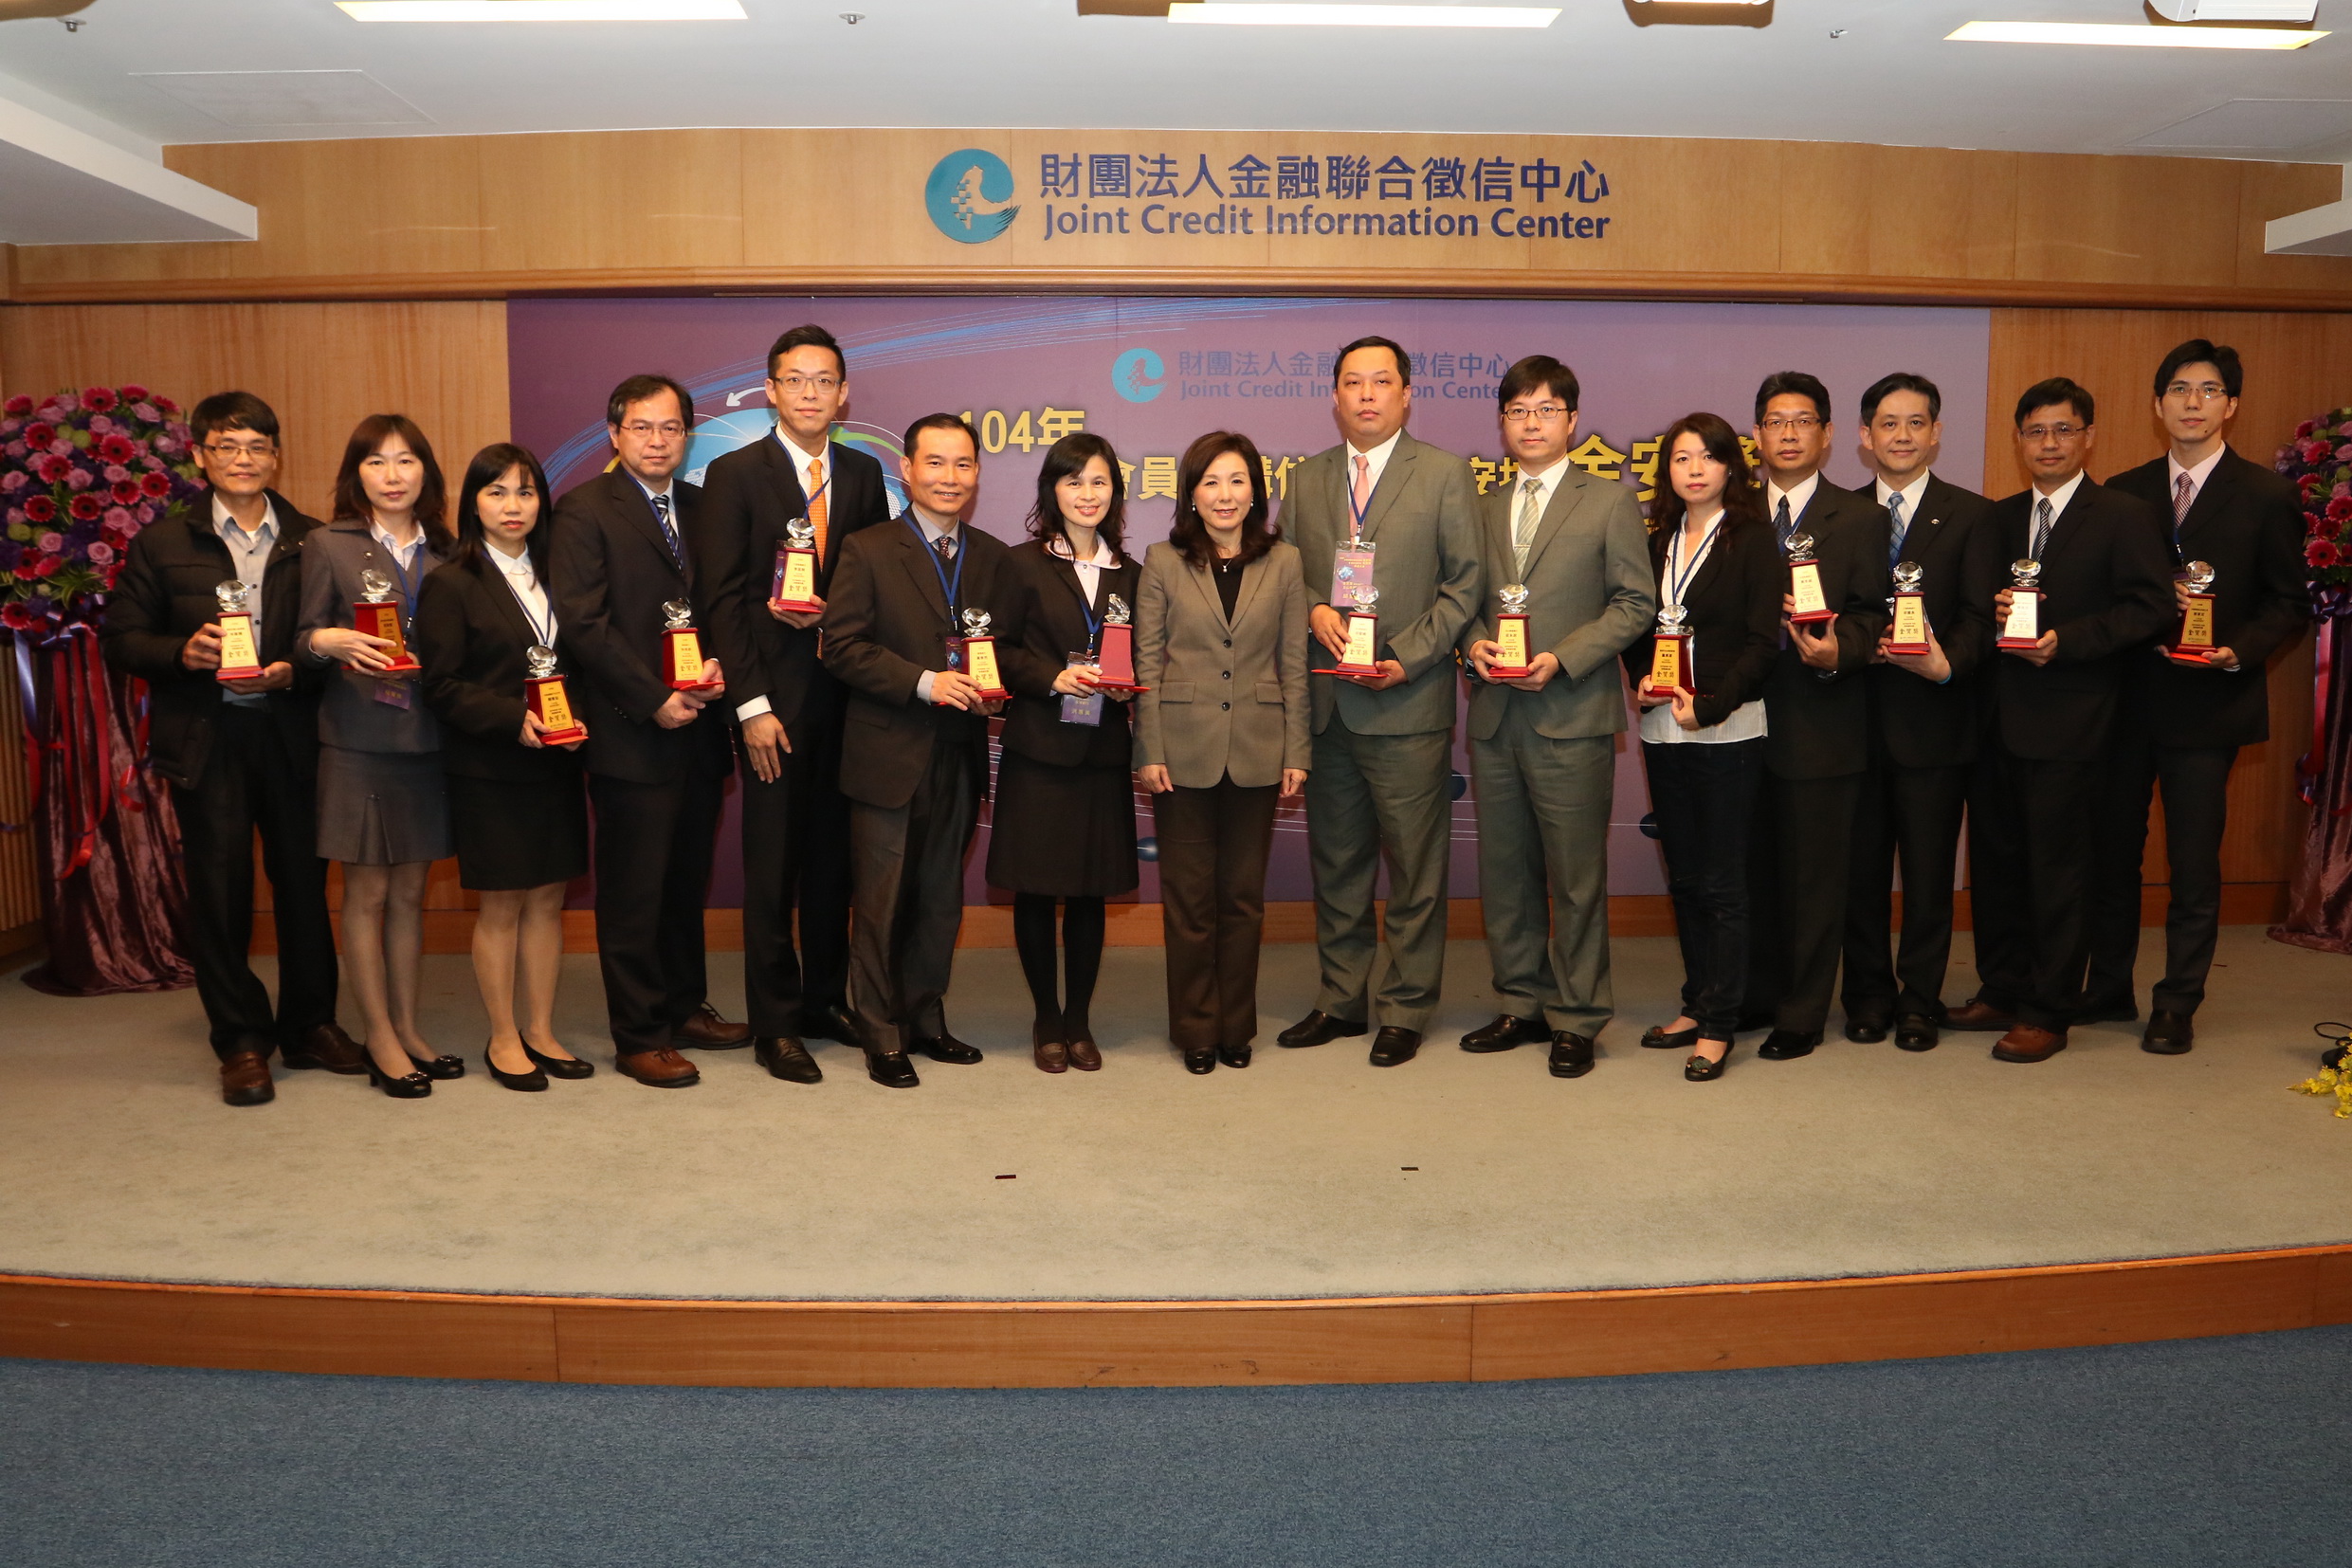 銀行公會李理事長紀珠(左八)與14名金質獎(授信資料類)得獎績優人員合影